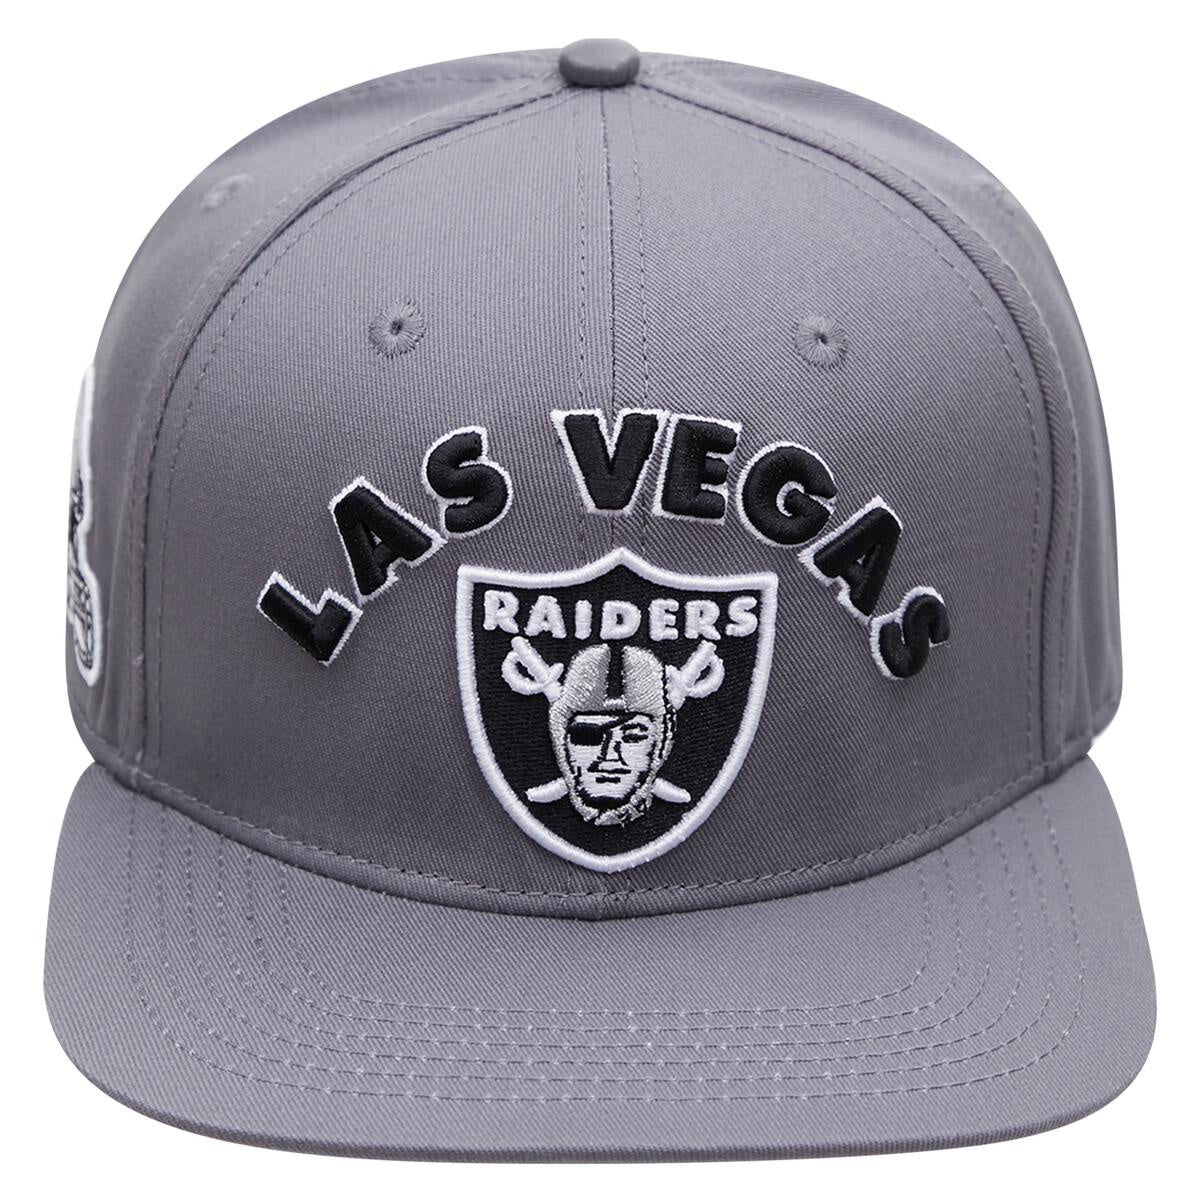 Las Vegas Raiders New Logo Gray Team Detachable Lanyard